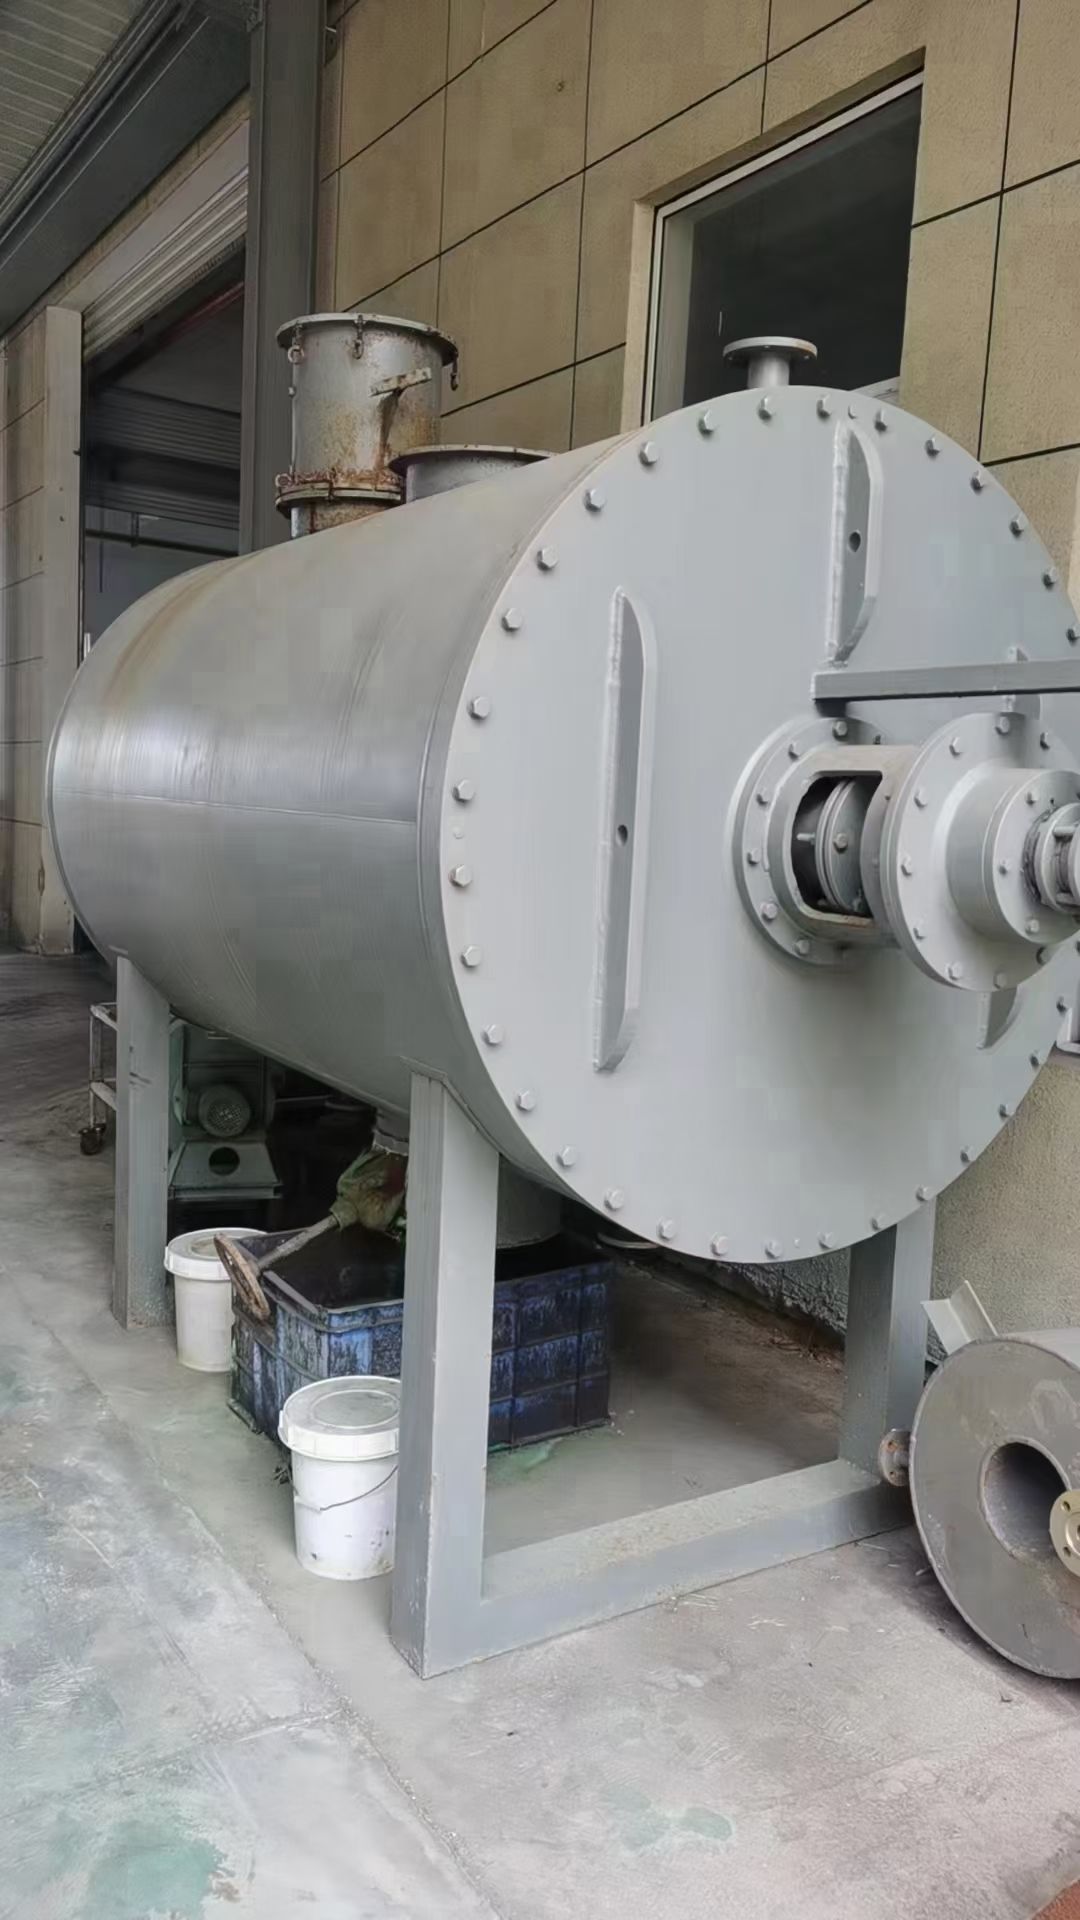 转让二手耙式干燥机 一台容积3000L内部钛材真空耙式干燥机